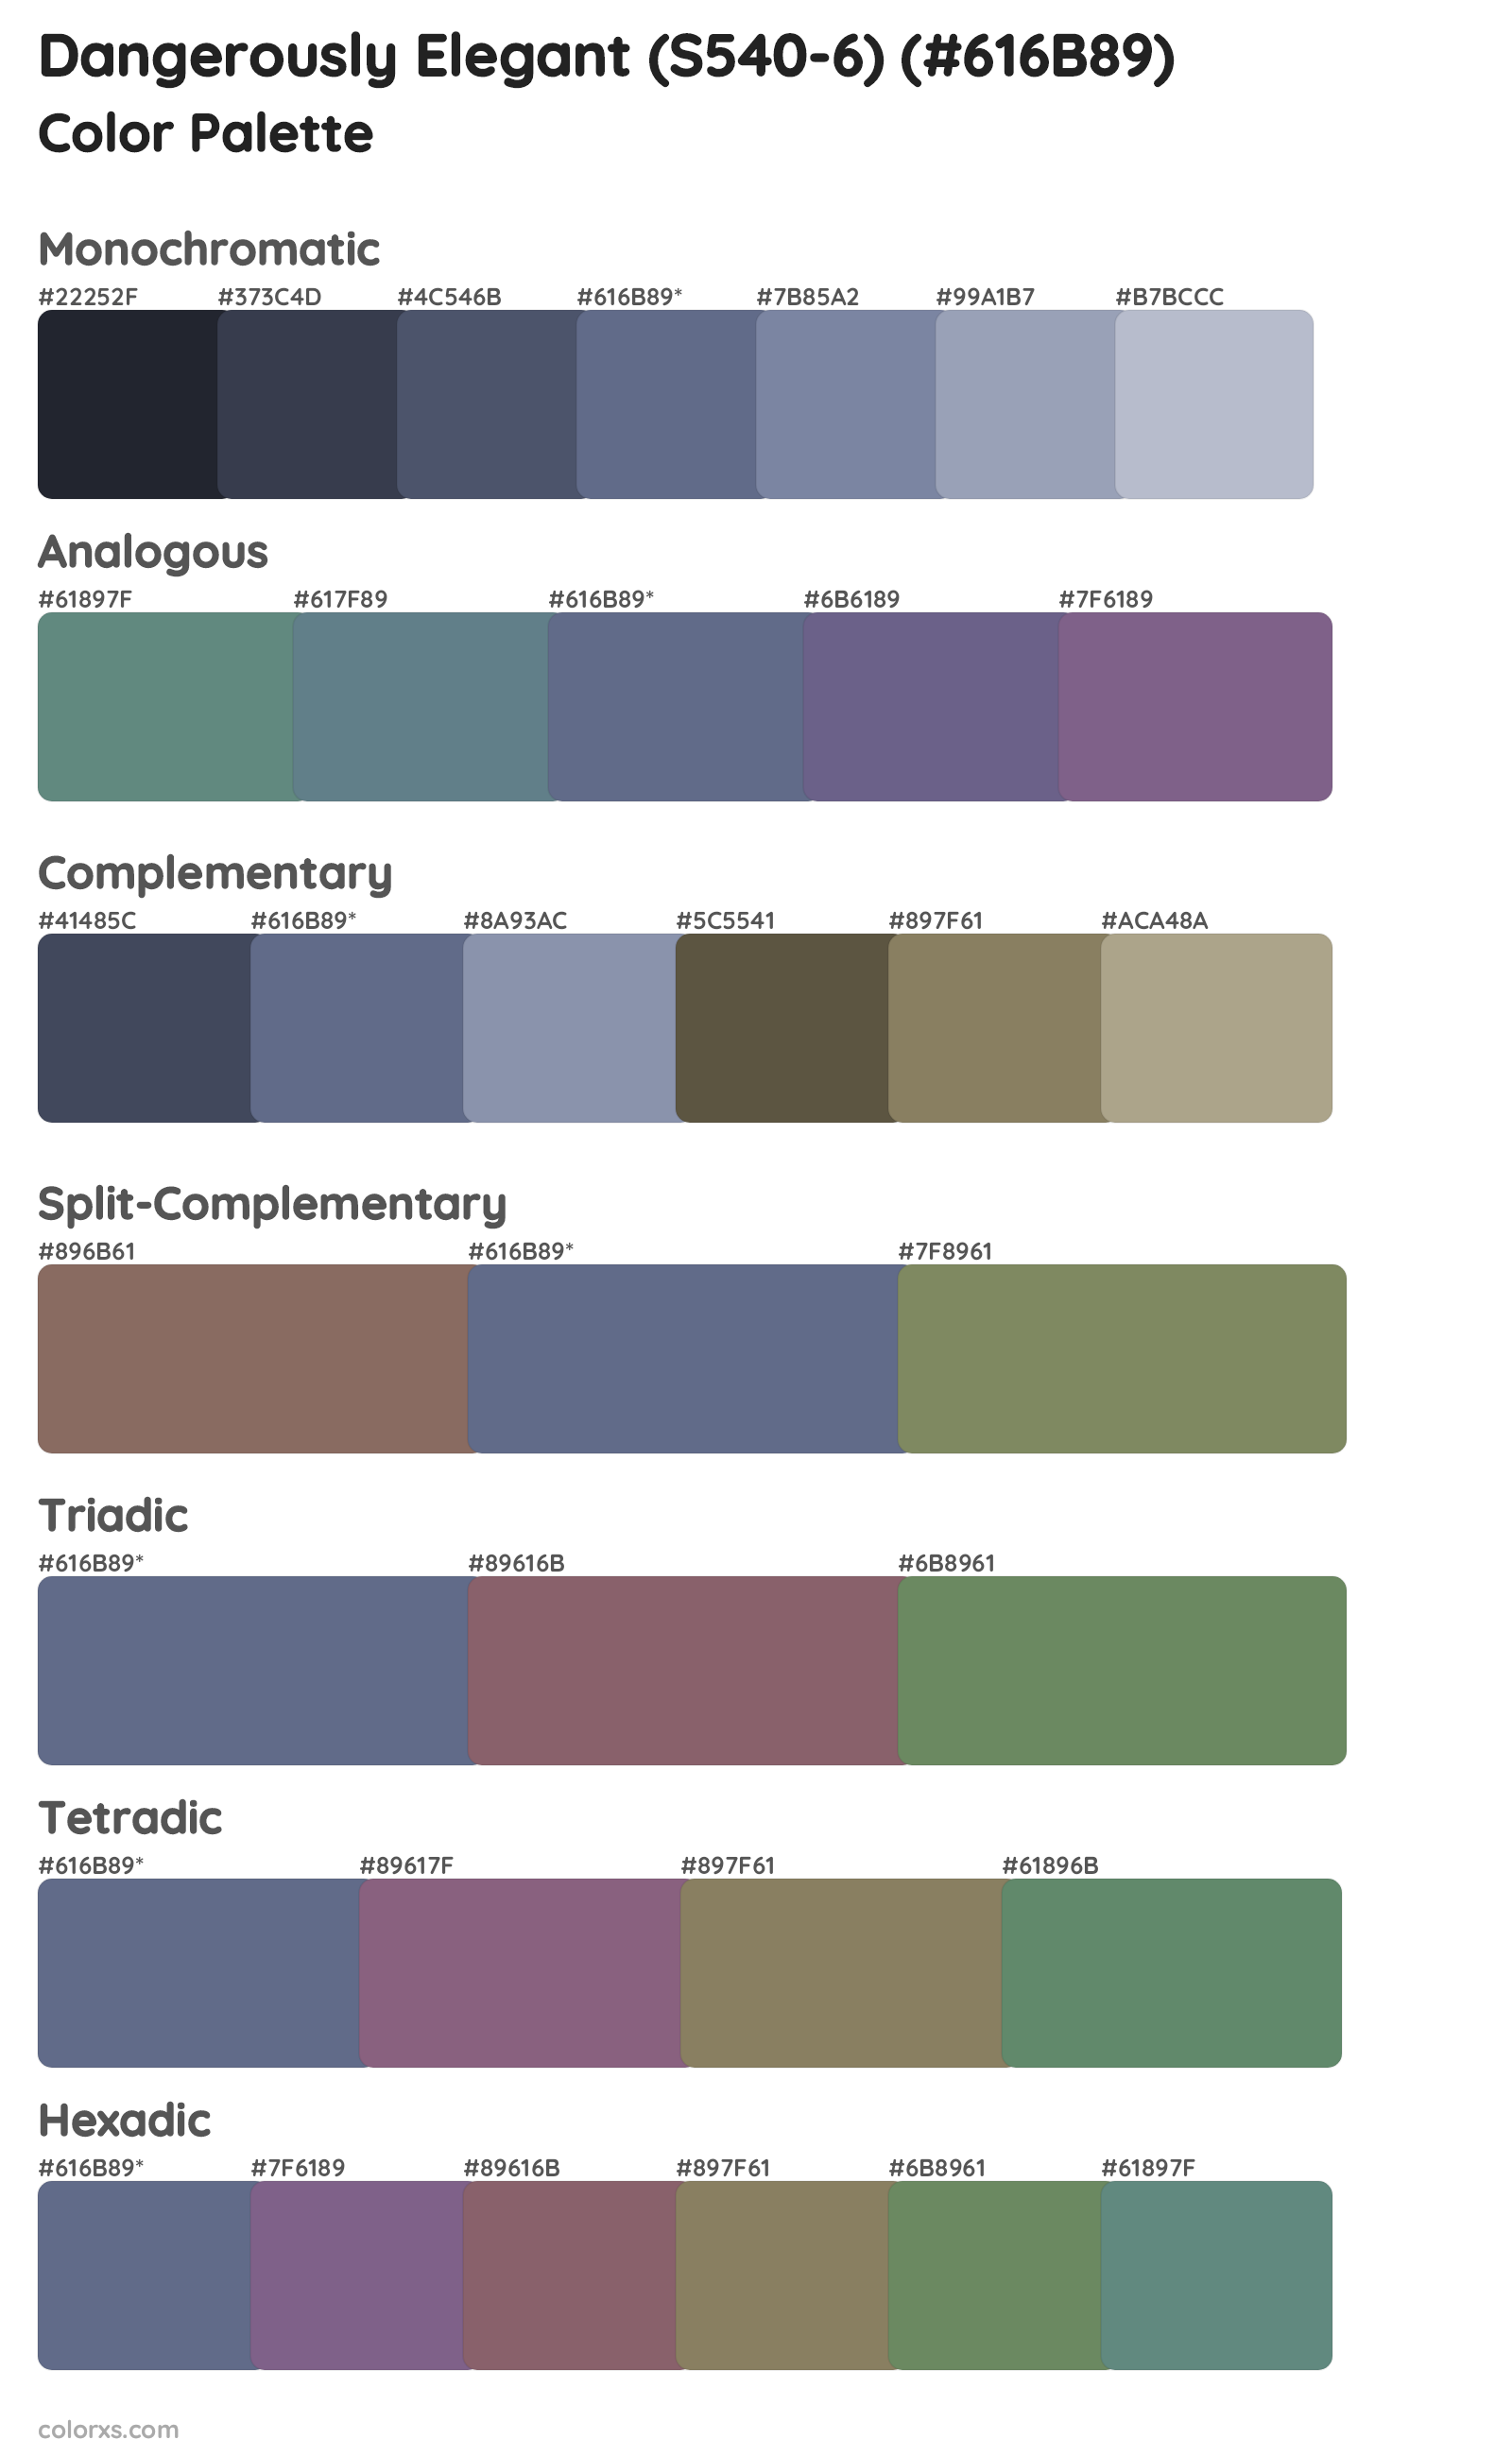 Dangerously Elegant (S540-6) Color Scheme Palettes